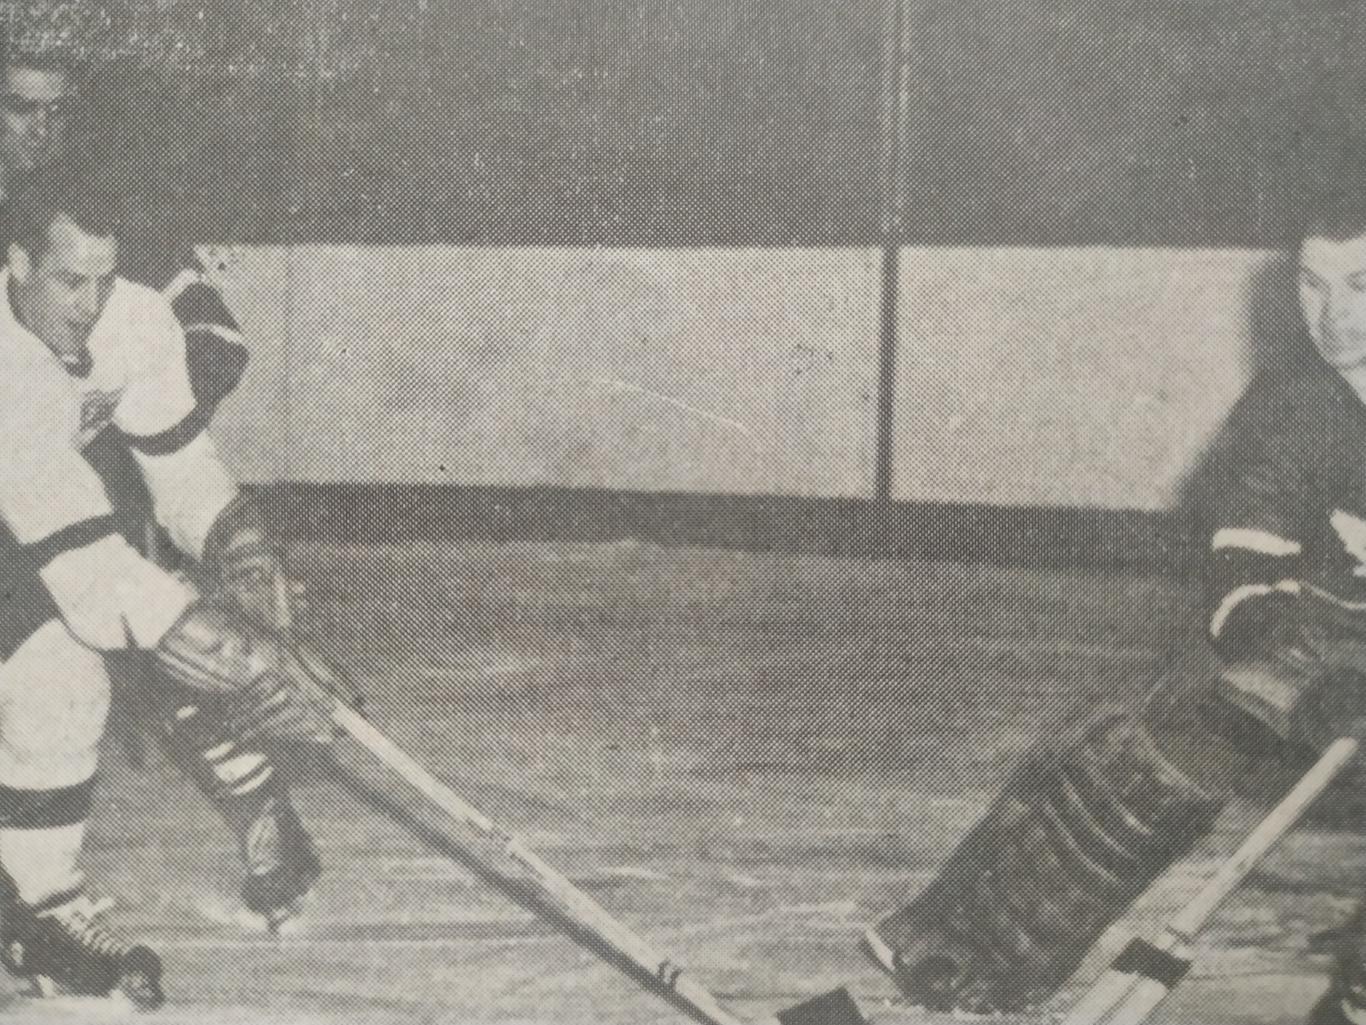 ХОККЕЙ ЖУРНАЛ ЕЖЕМЕСЯЧНИК СПОРТ РЕВЬЮ НХЛ NHL 1956 FEBRIER SPORT REVUE 3